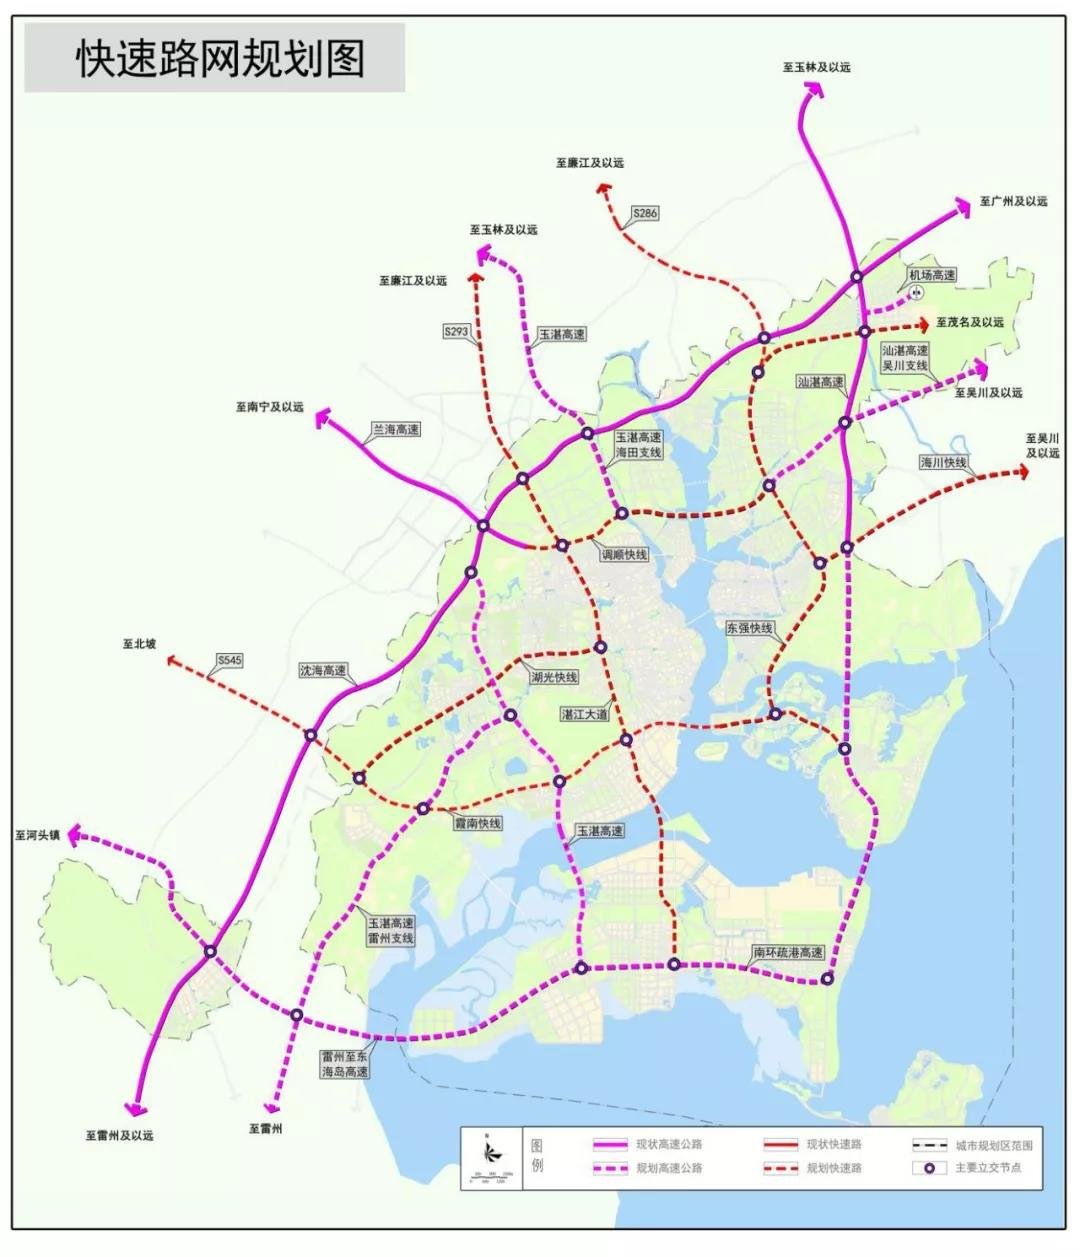 湛江最新干线路网规划出炉!吴川的主干公路将这样规划